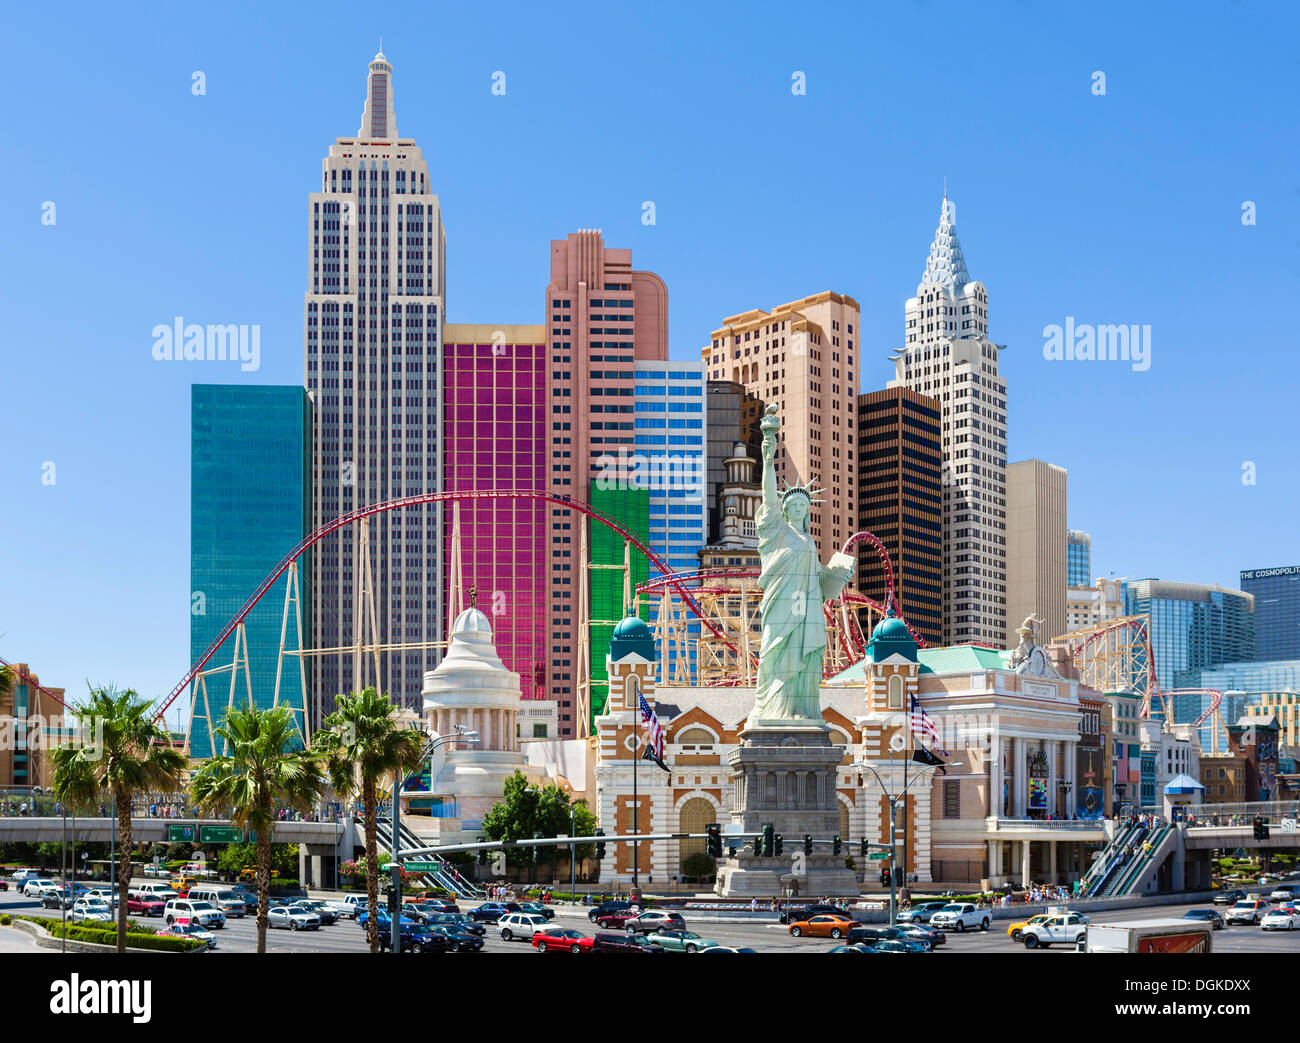 New York-New York hotel and casino, Las Vegas Boulevard South (The Strip), Las Vegas, Nevada, USA Stock Photo